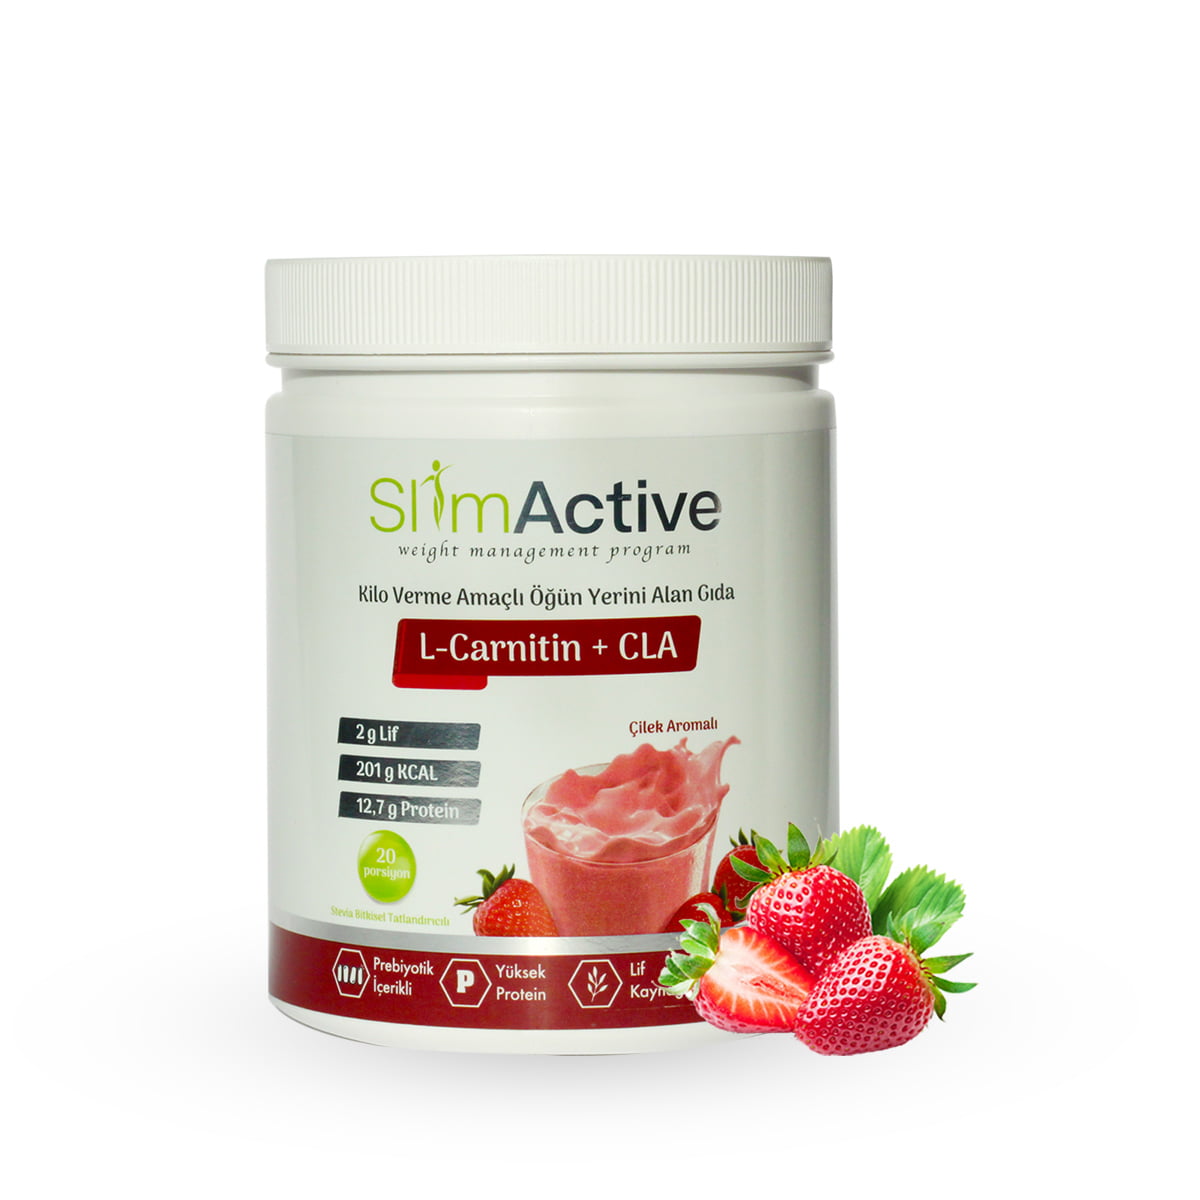 Slim Active bir kilo kontrol ürünüdür.